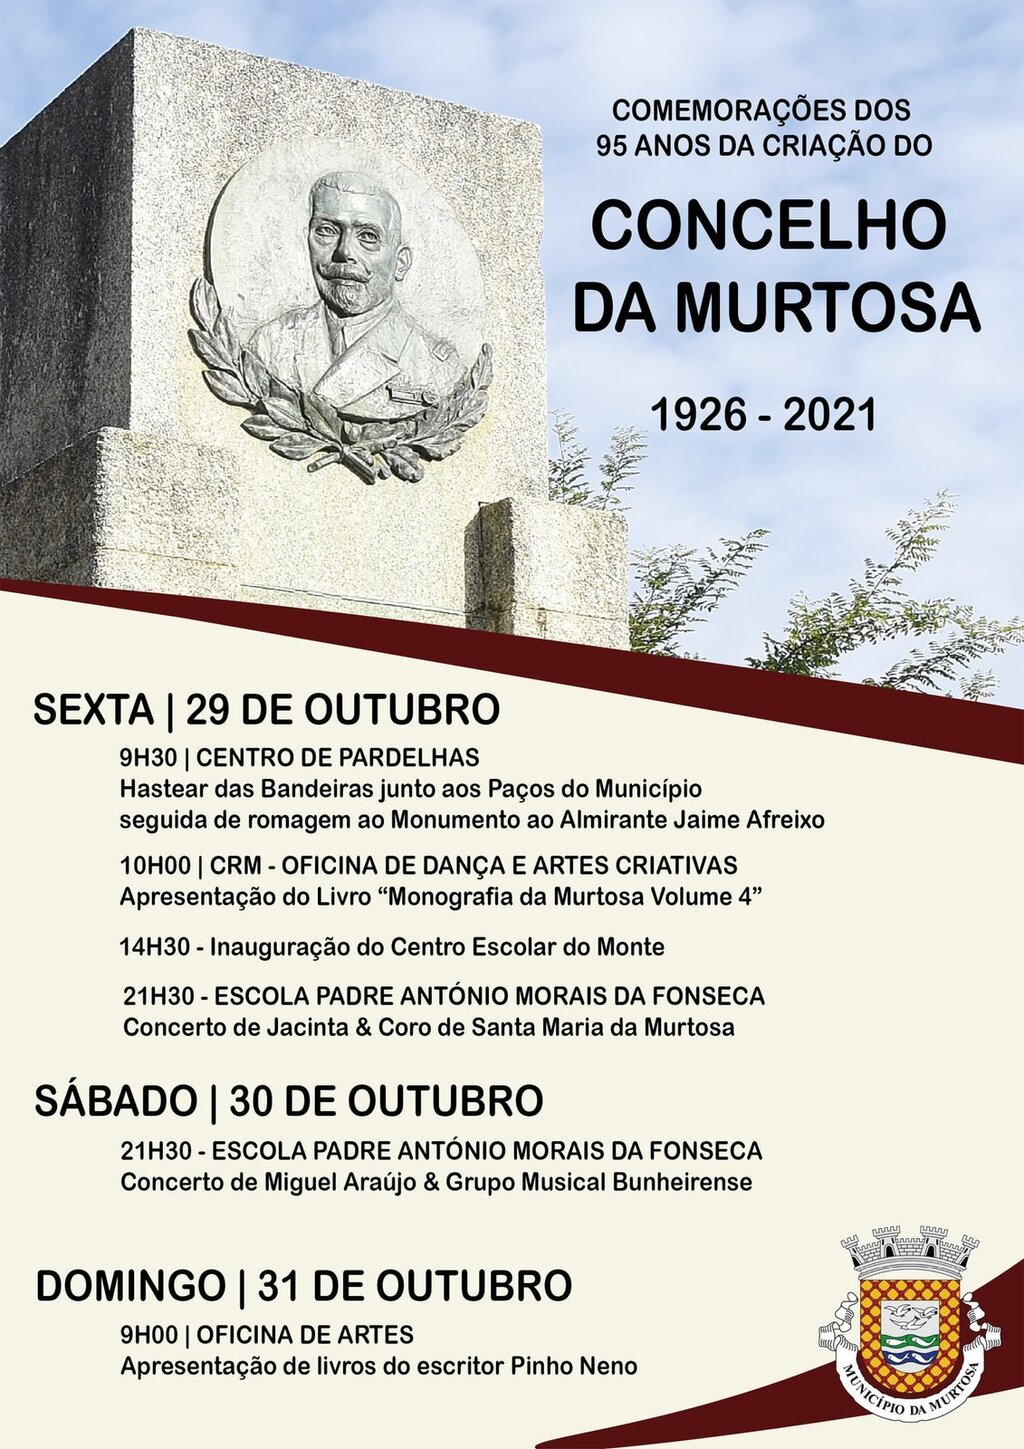 Comemorações dos 95 Anos da Criação do Concelho da Murtosa